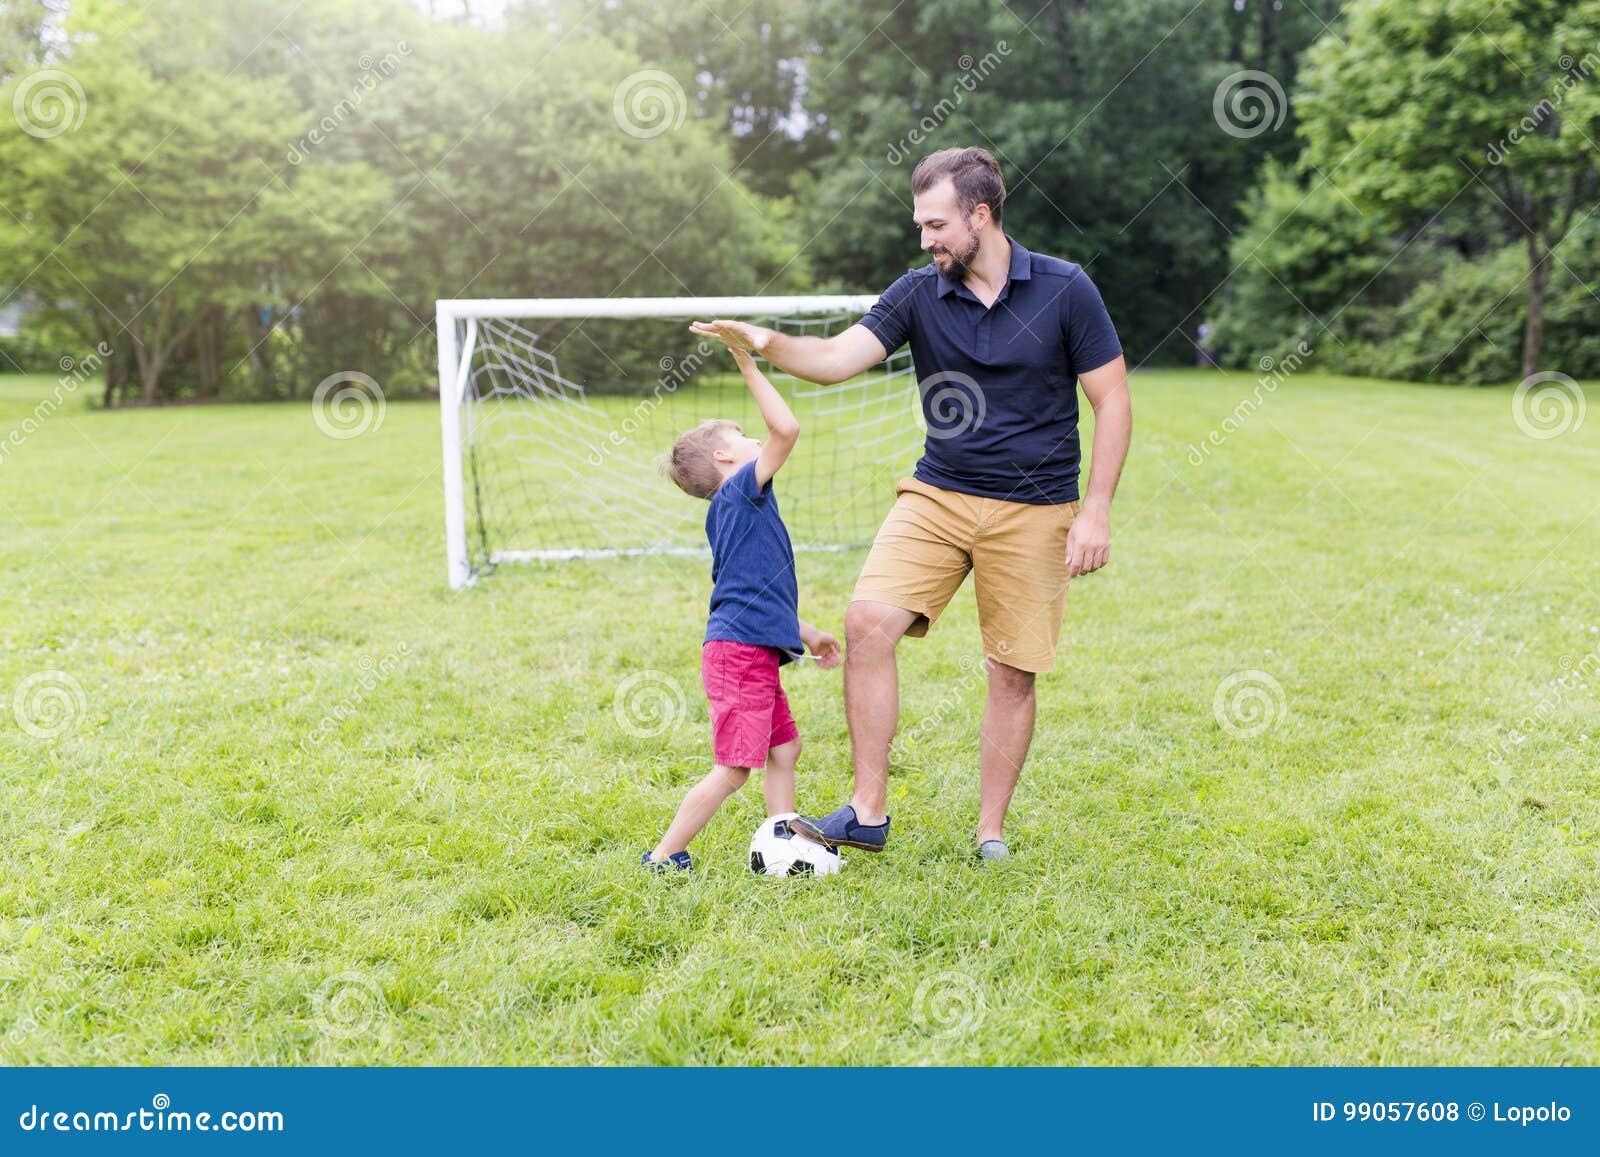 Папа играет в футбол. Игра в футбол с детьми и родителями. Футбол с сыном. Футбол с папой. Папа с сыном играют в футбол.